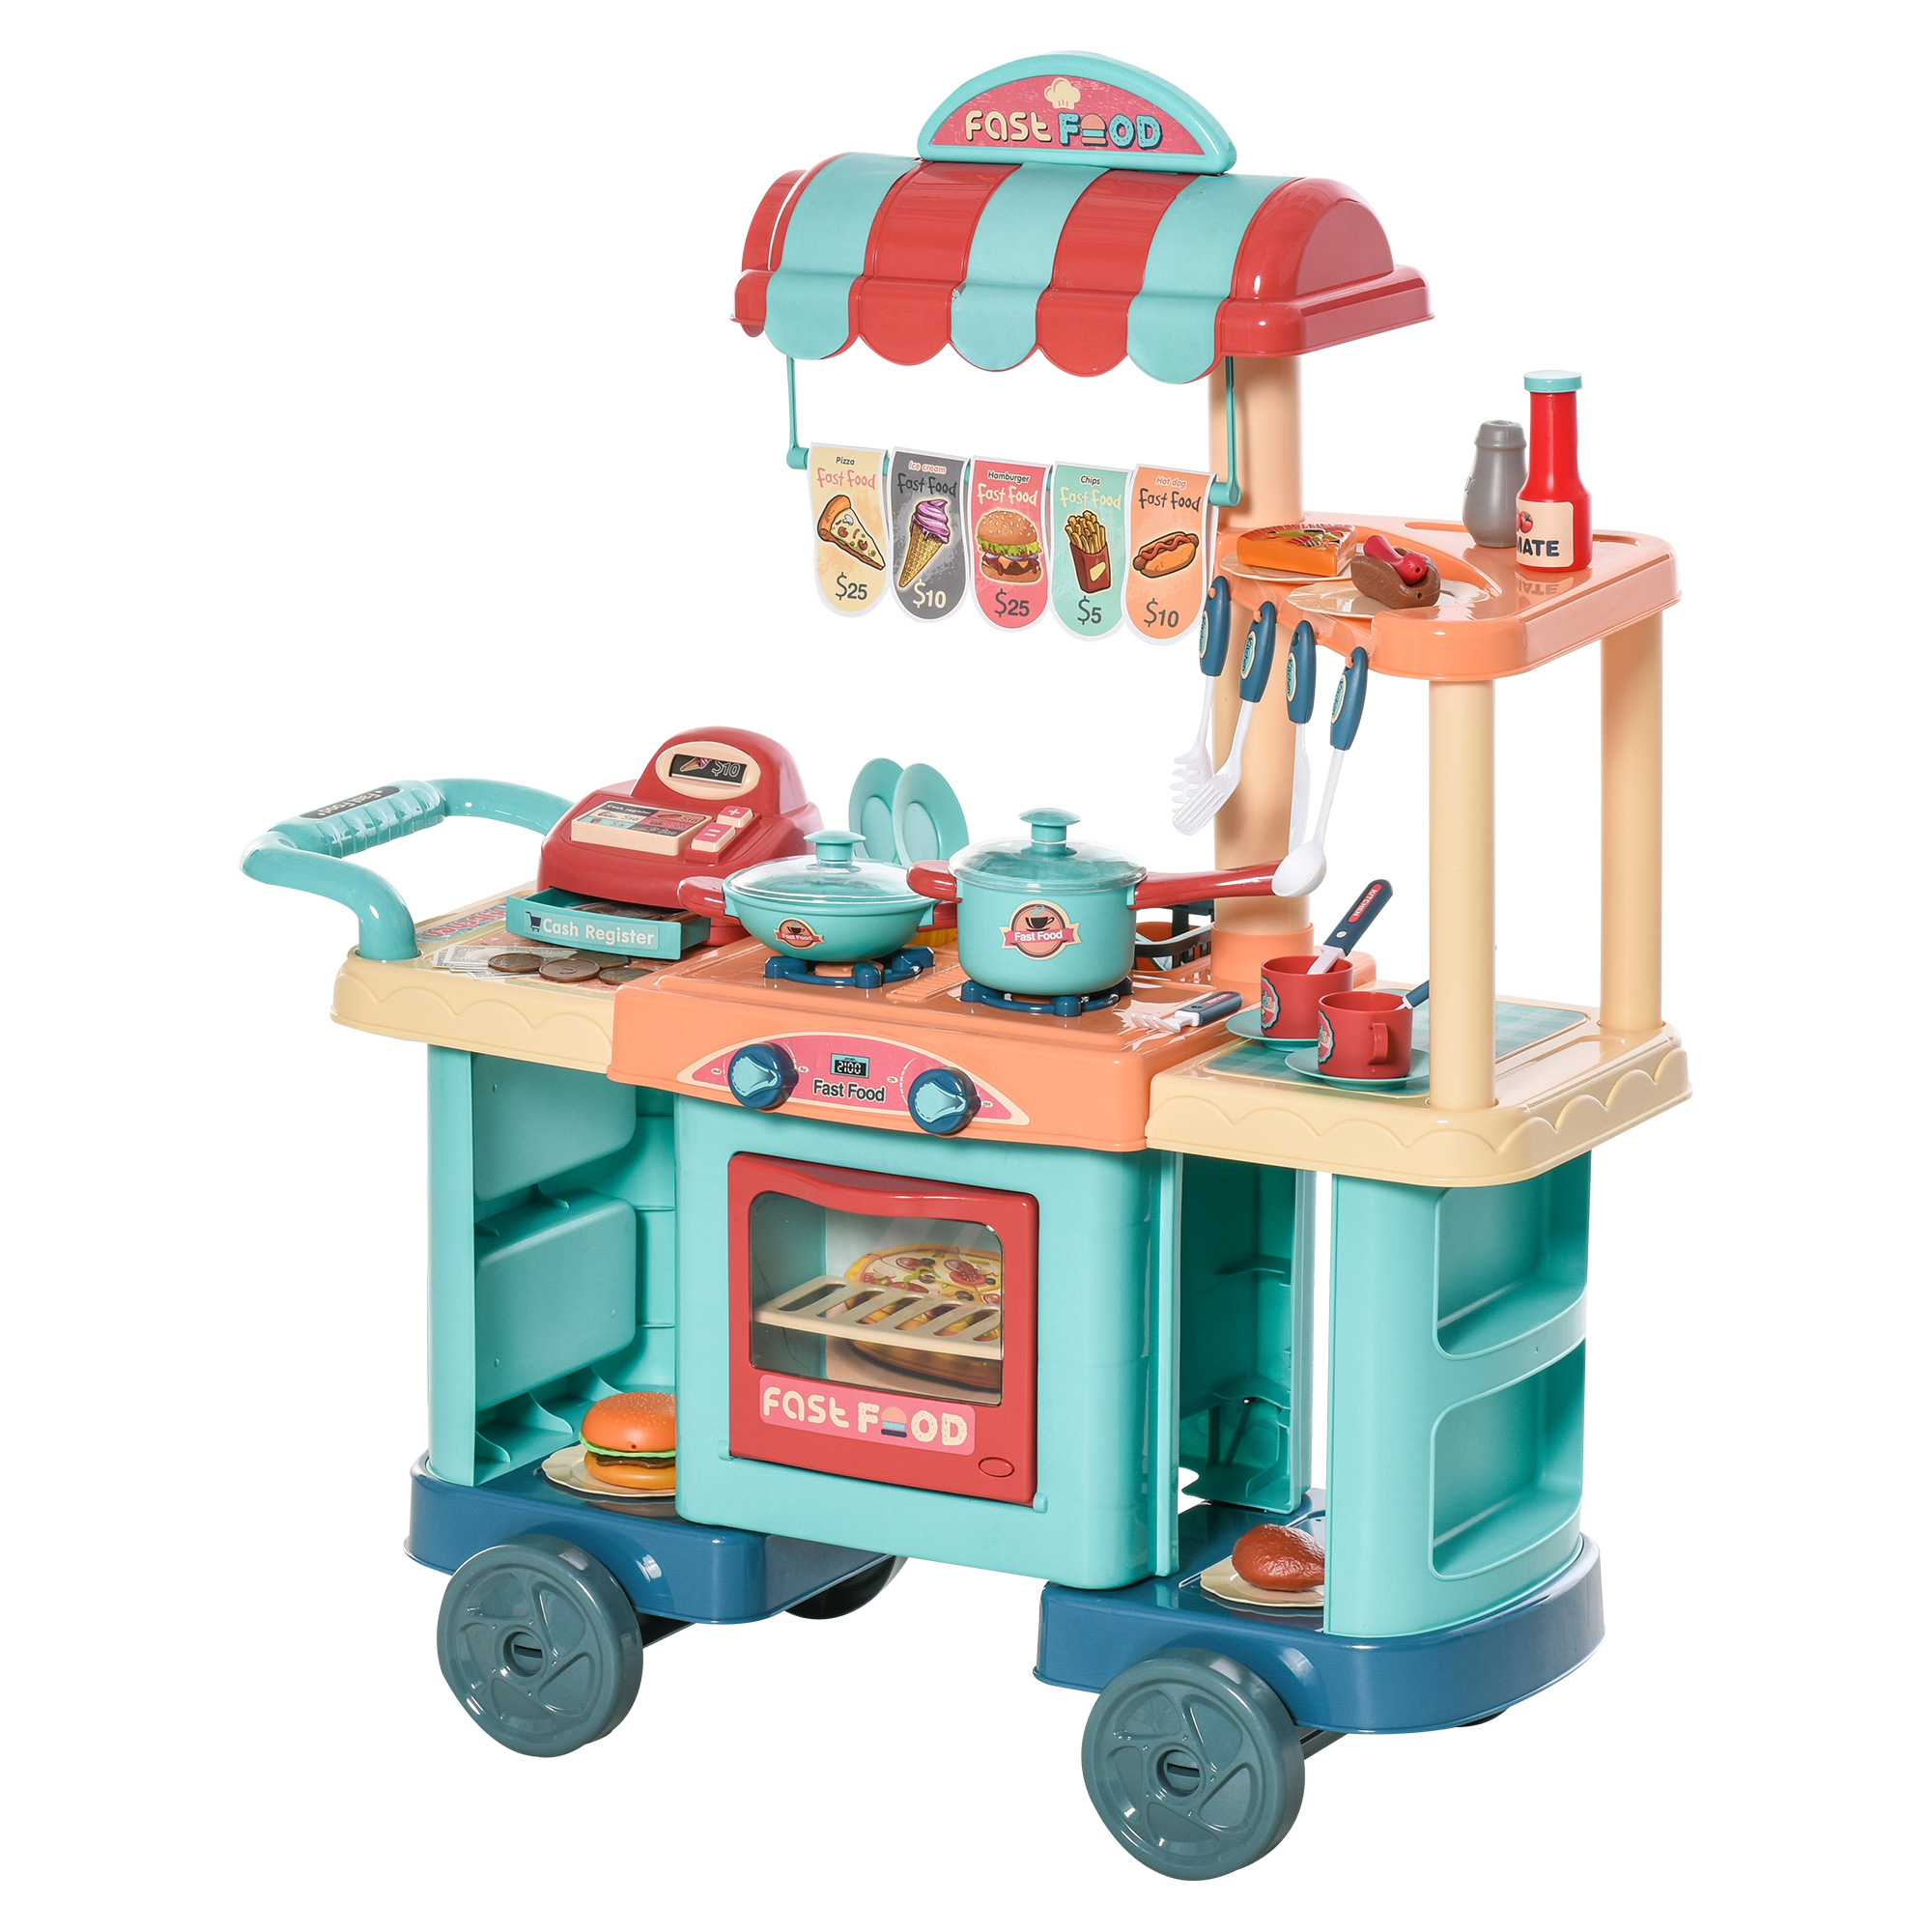 Zubehör Kinderküche Spielzeugküche Kinder Plastik Kinderspielzeug Spielküche 